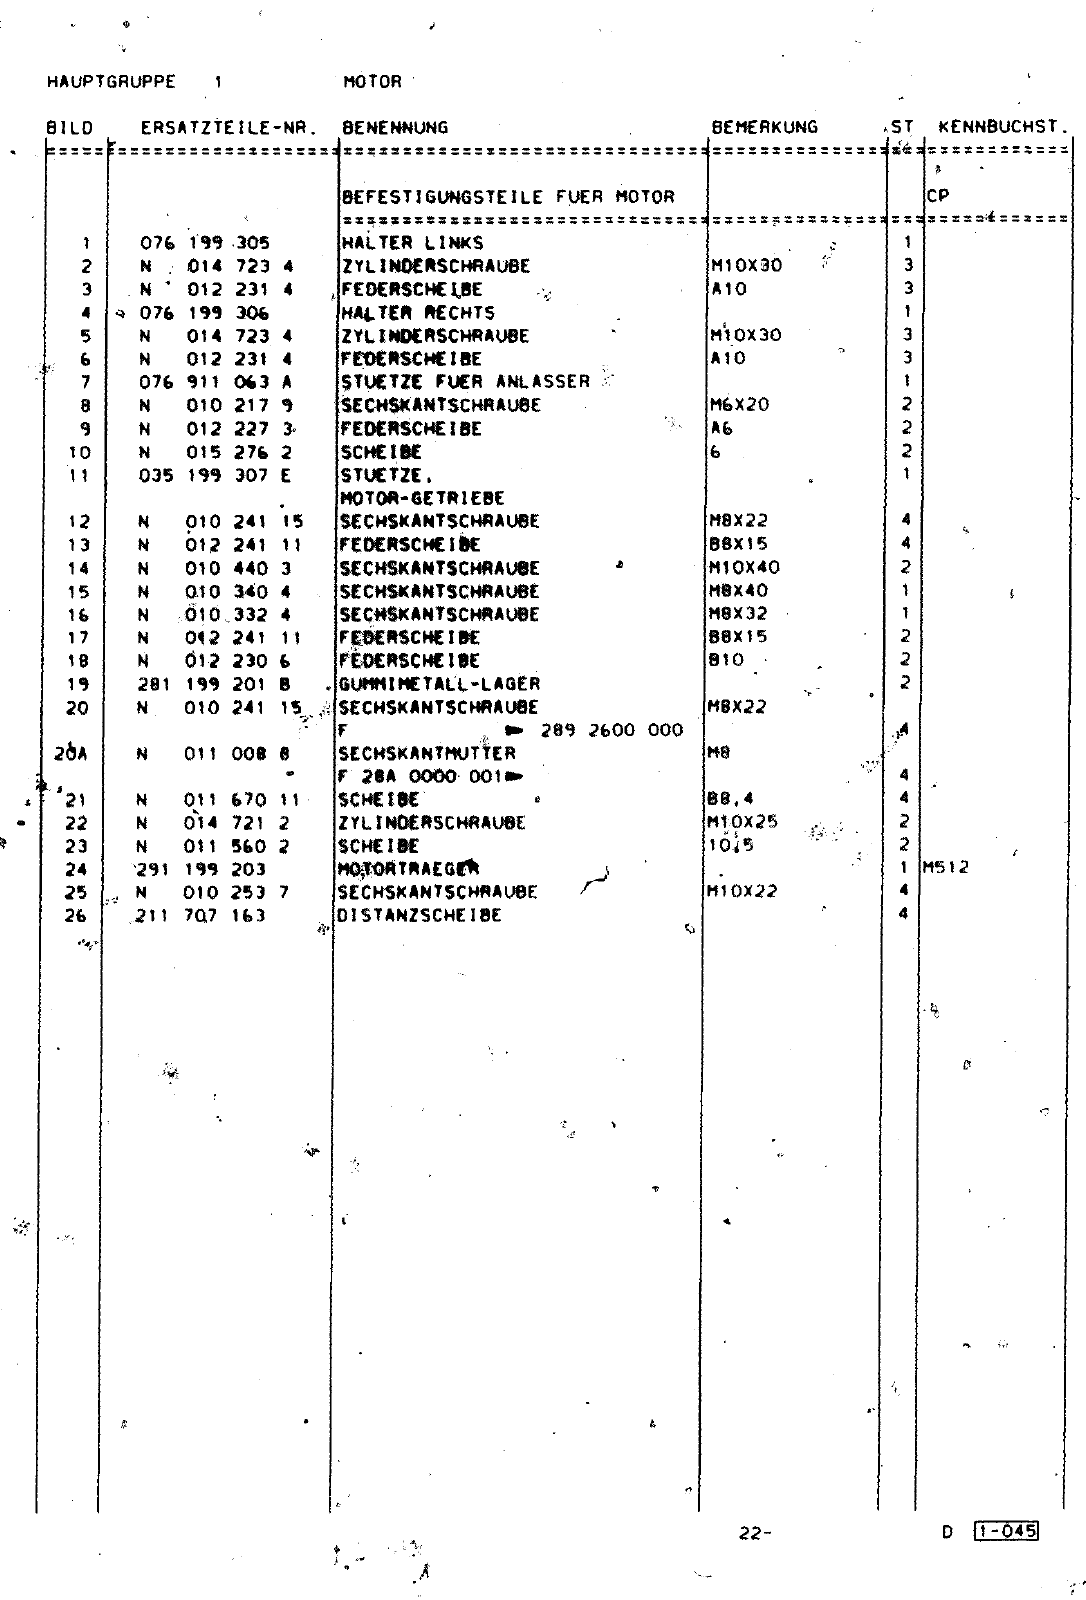 Vorschau Lastentransporter LT F-28-D-007 273 Seite 168